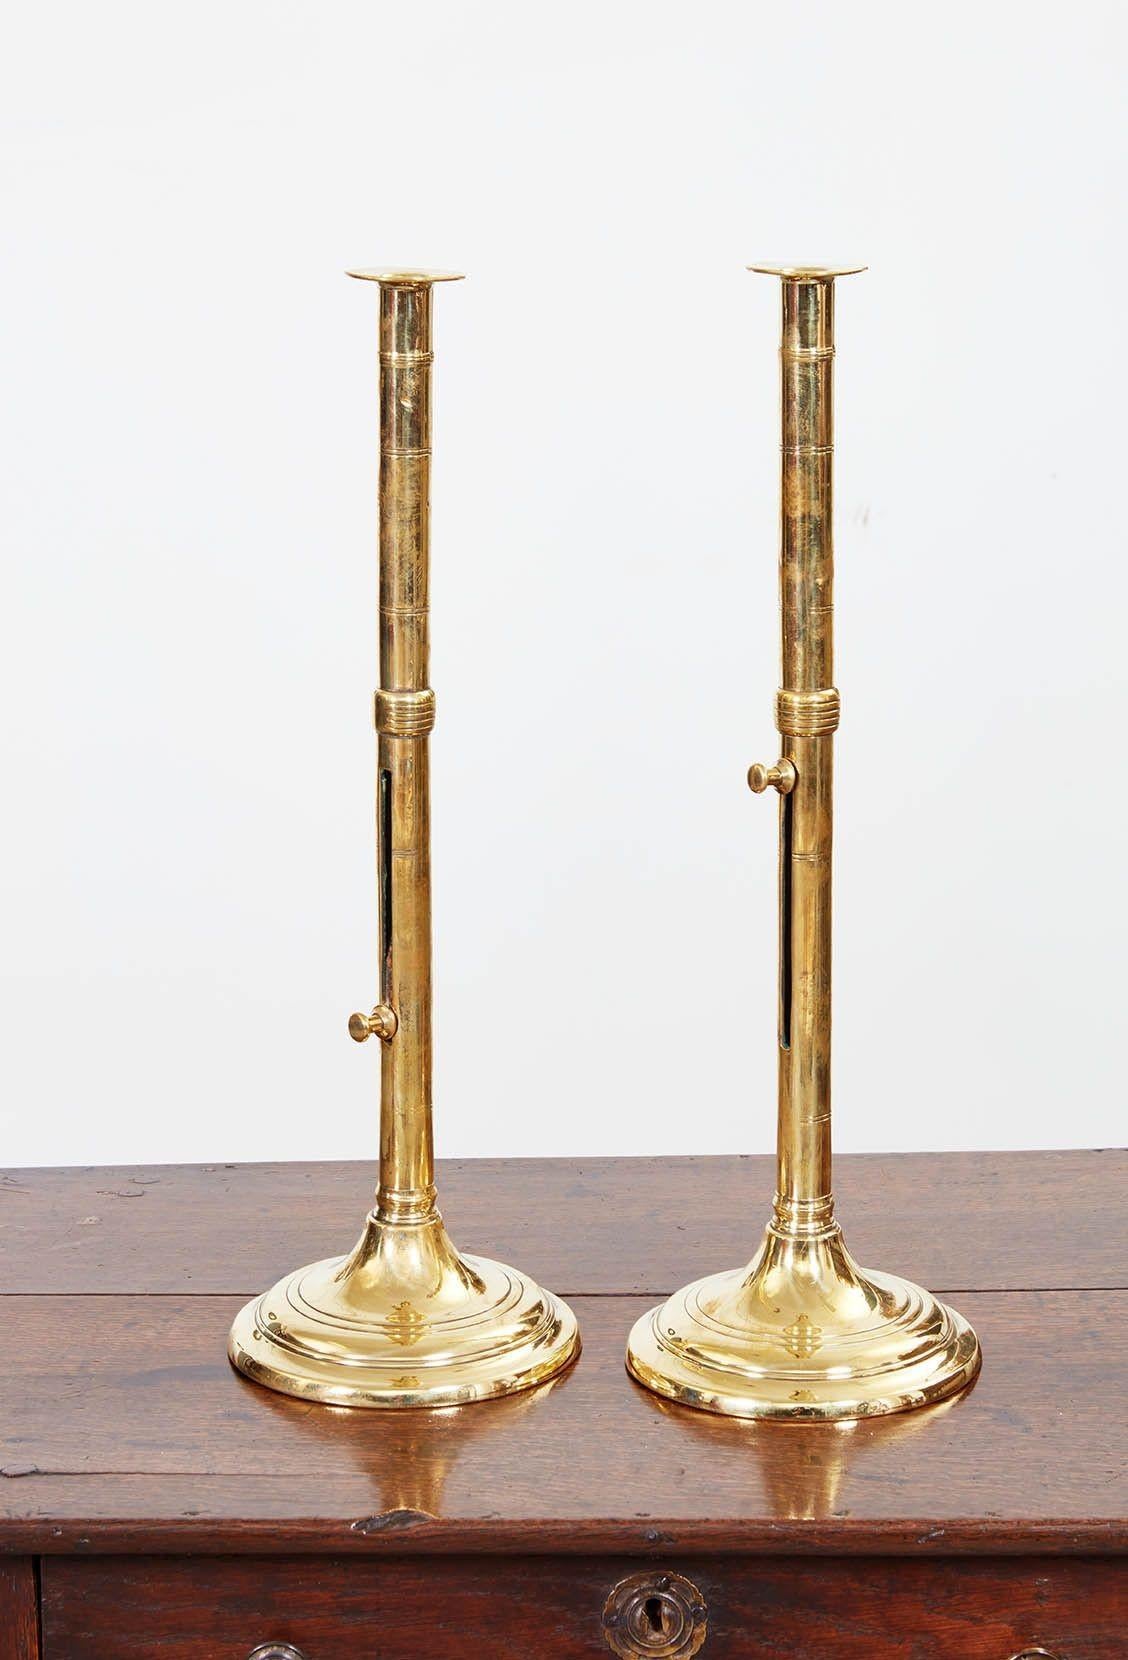 Paire de chandeliers réglables en laiton, à tige haute avec bouton de réglage et anneaux tournants au milieu de la tige, surmontés d'un protège-gouttes et reposant sur une base tournée. Anglais, vers 1830.